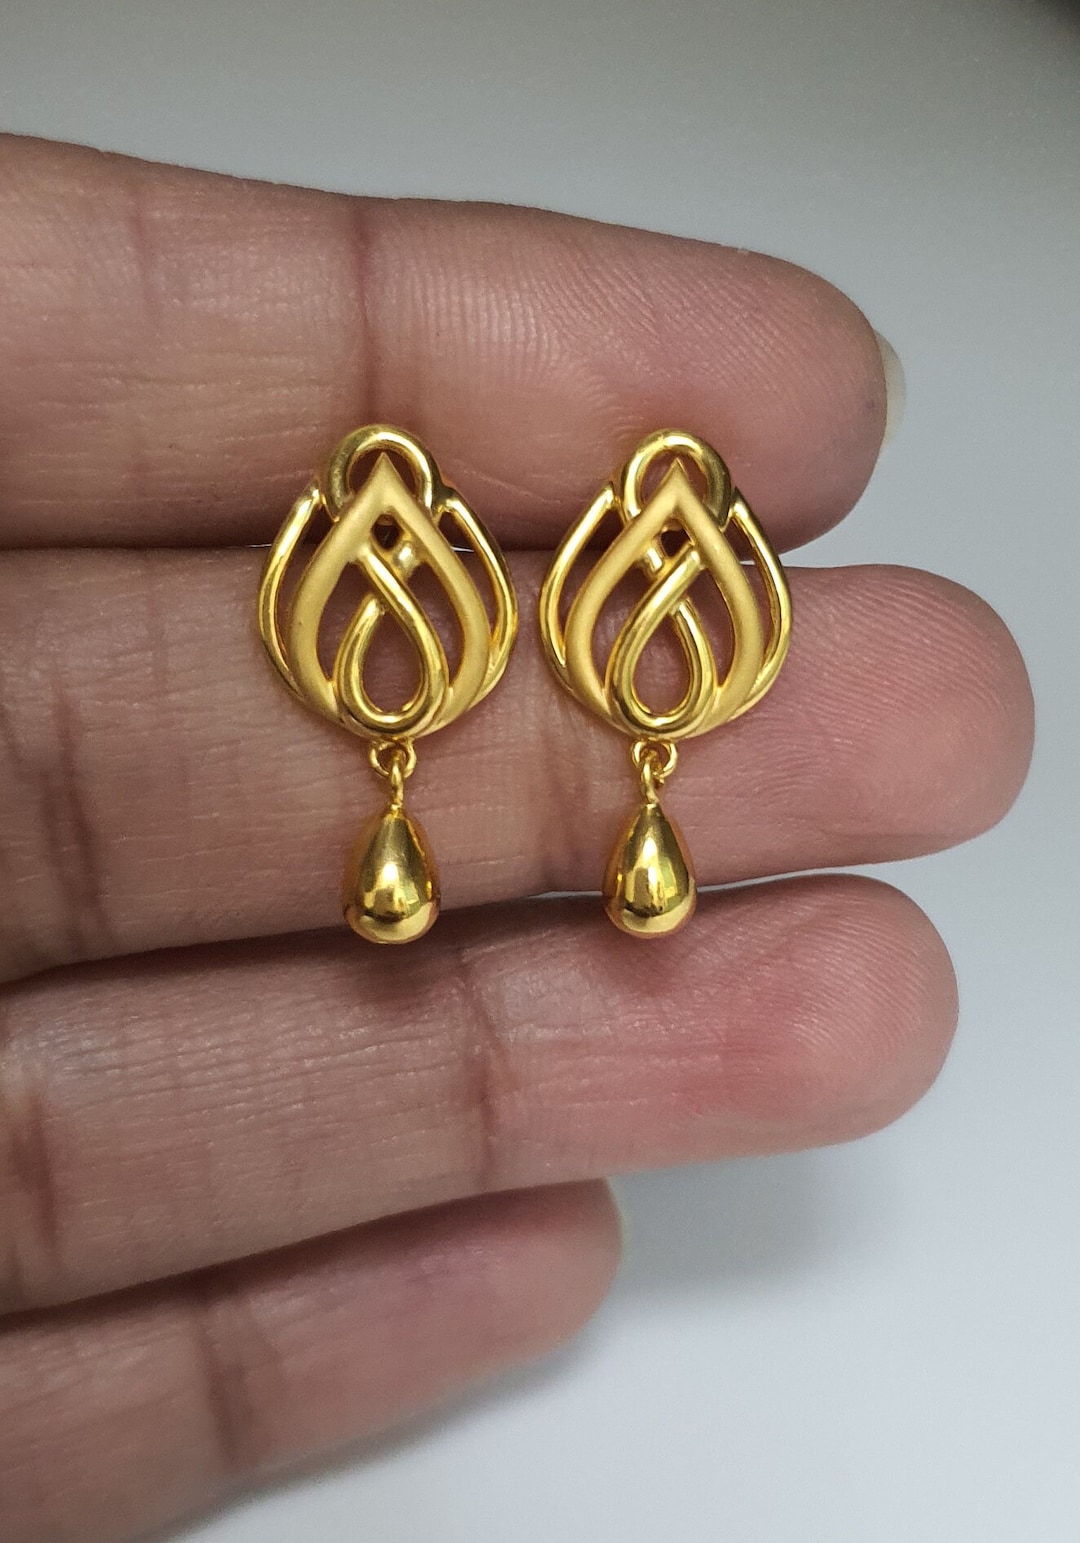 22K Gold Earrings for Women - 235-GER13787 in 1.800 Grams